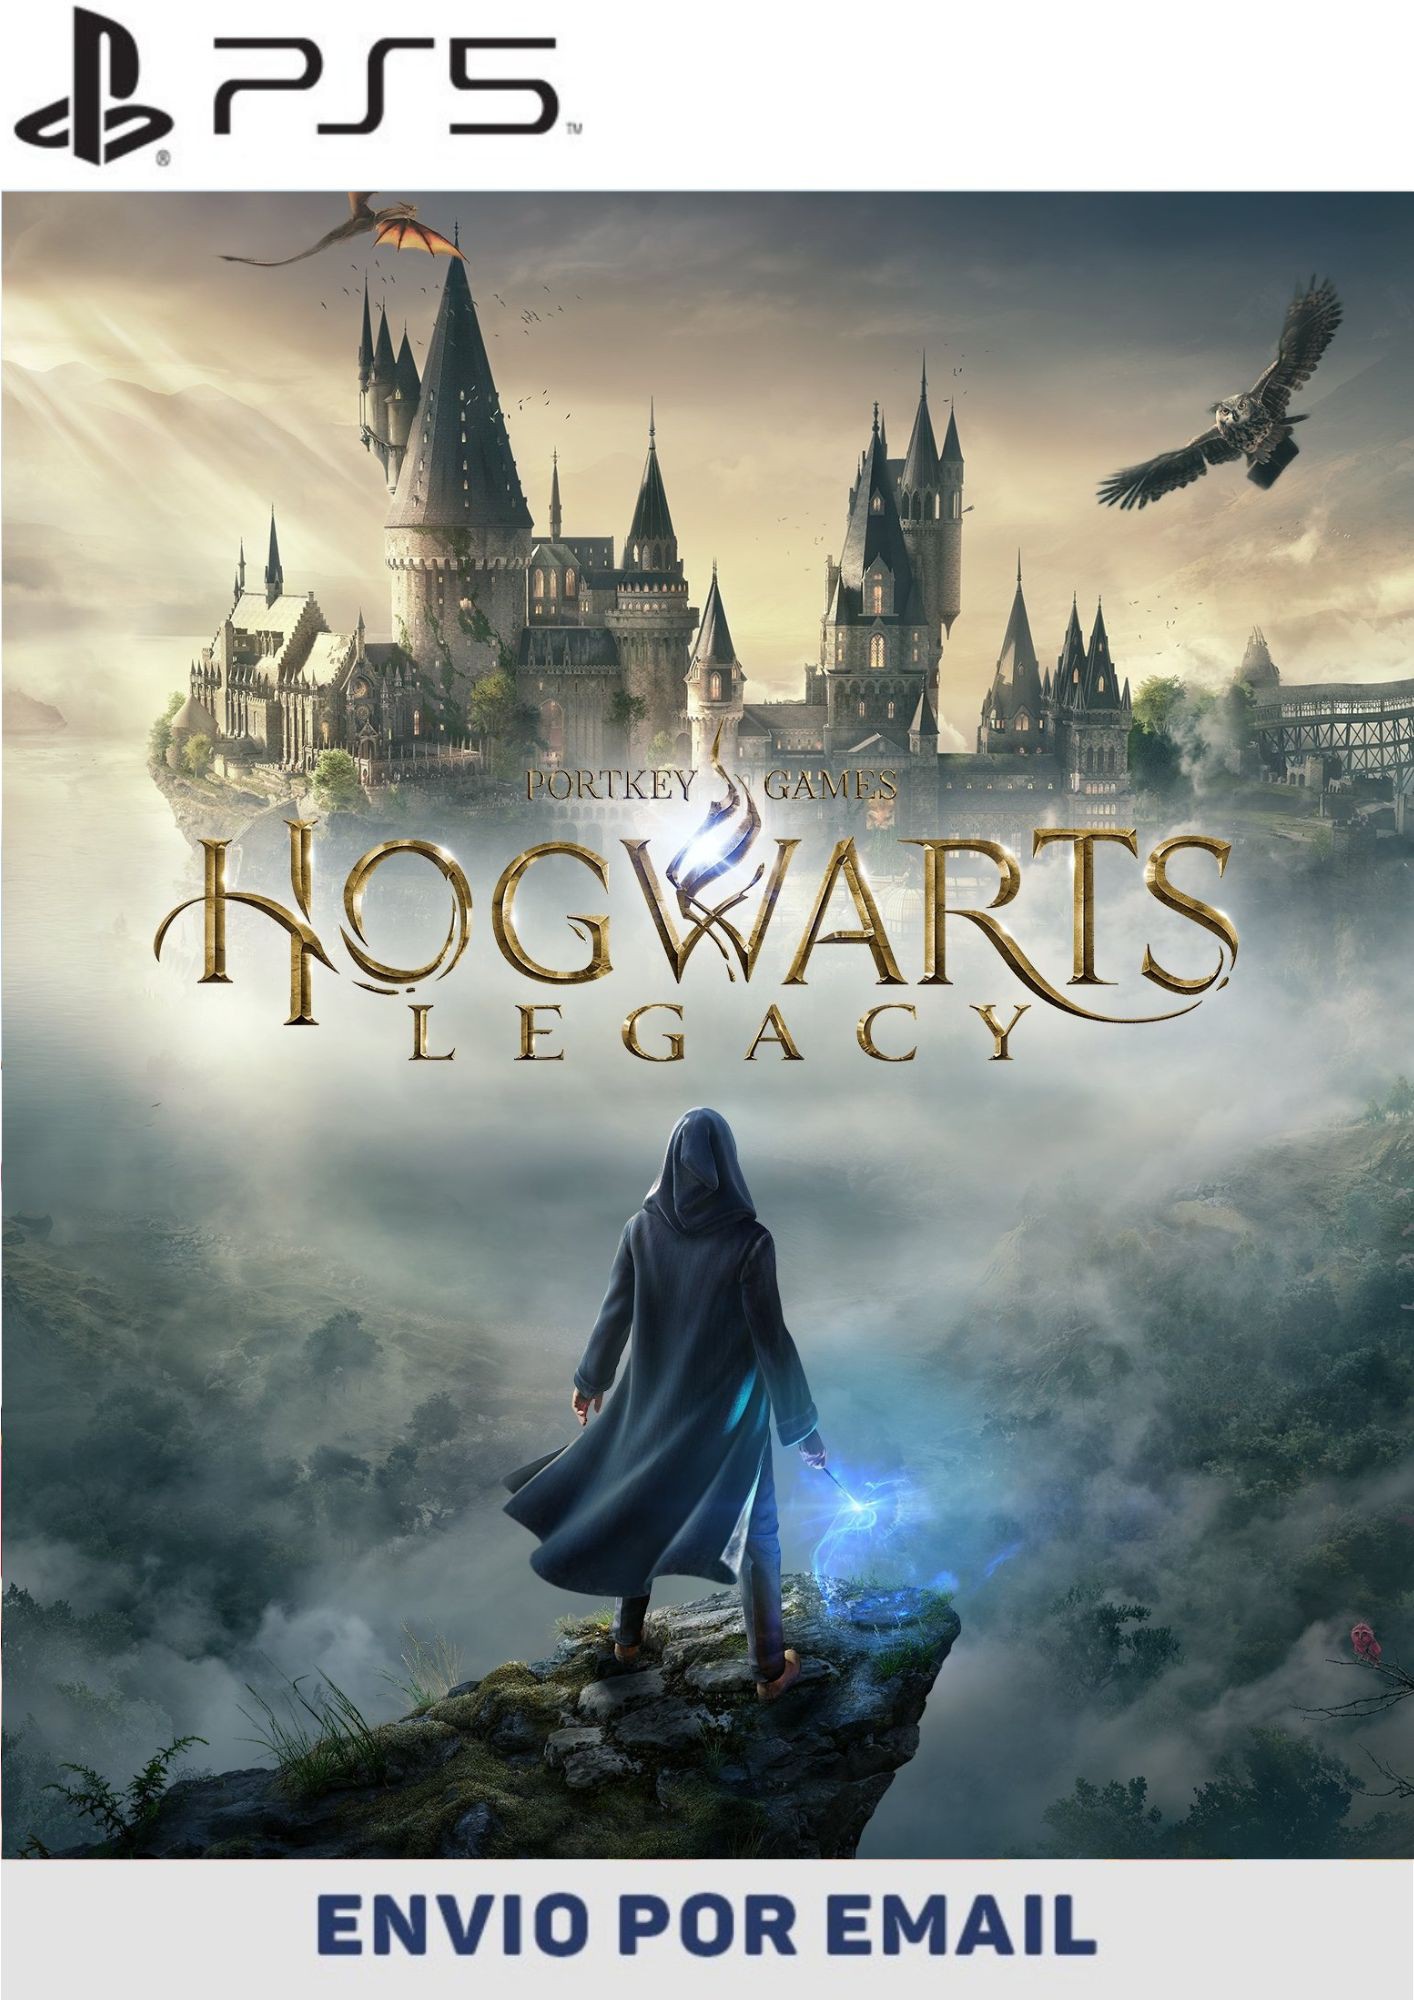 Hogwarts Legacy - PS5  Compra e venda de jogos e consoles